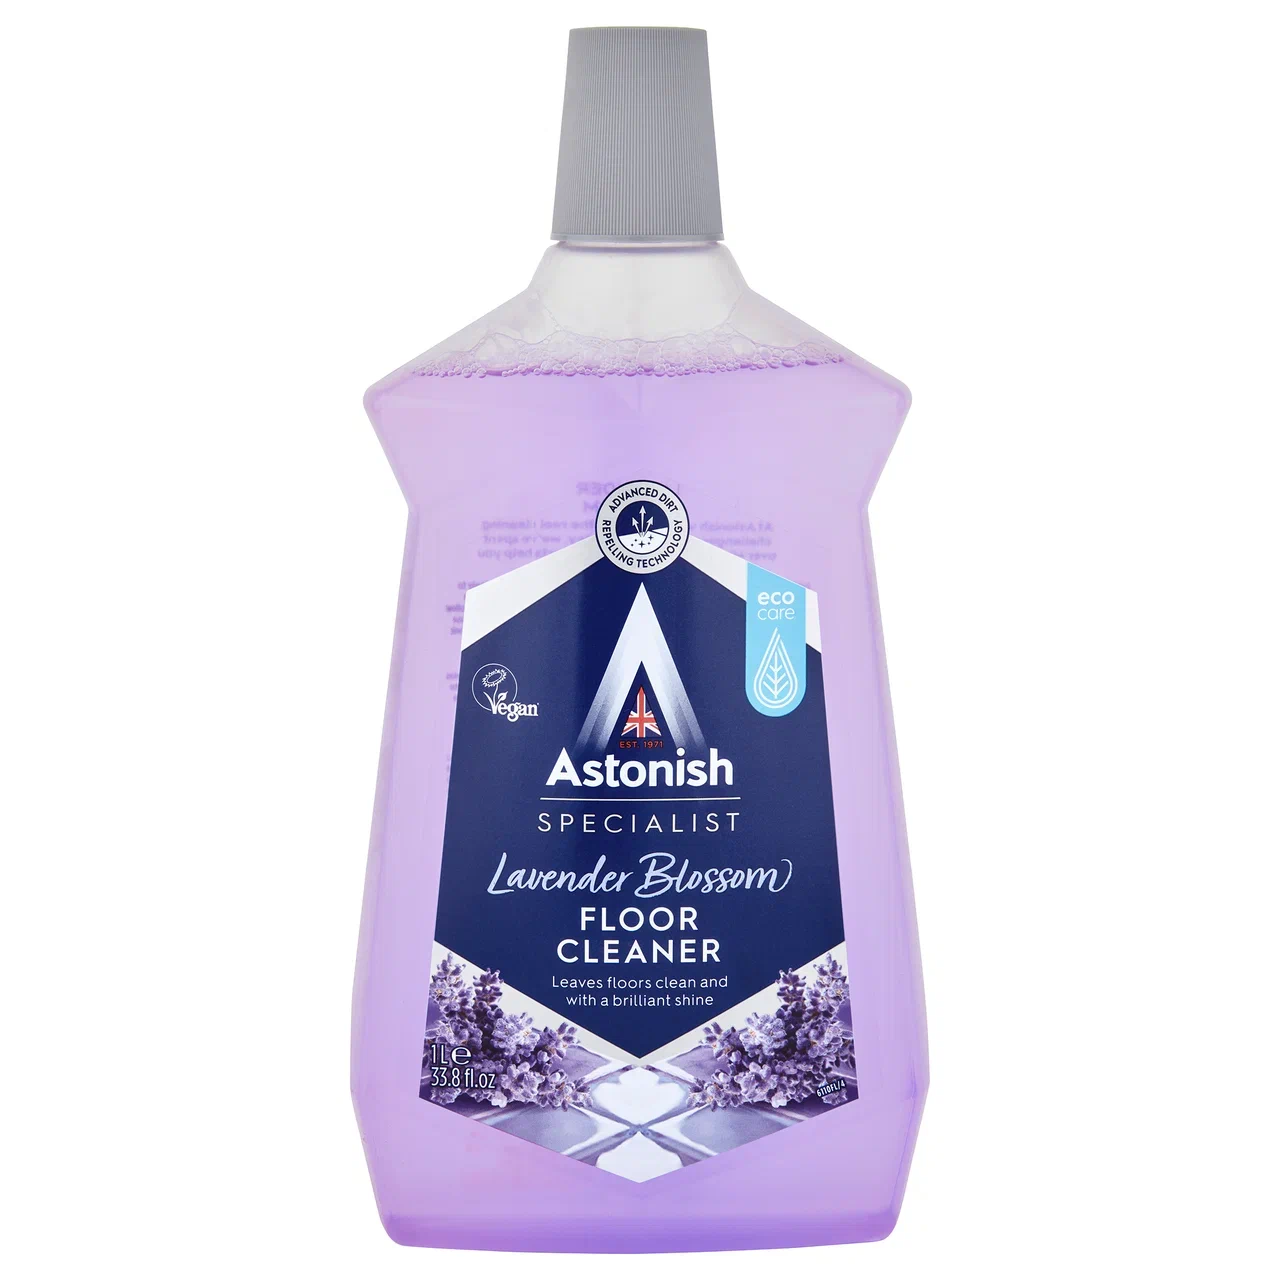 Cредство для мытья полов Astonish универсальное, цветок лаванды, 1 л